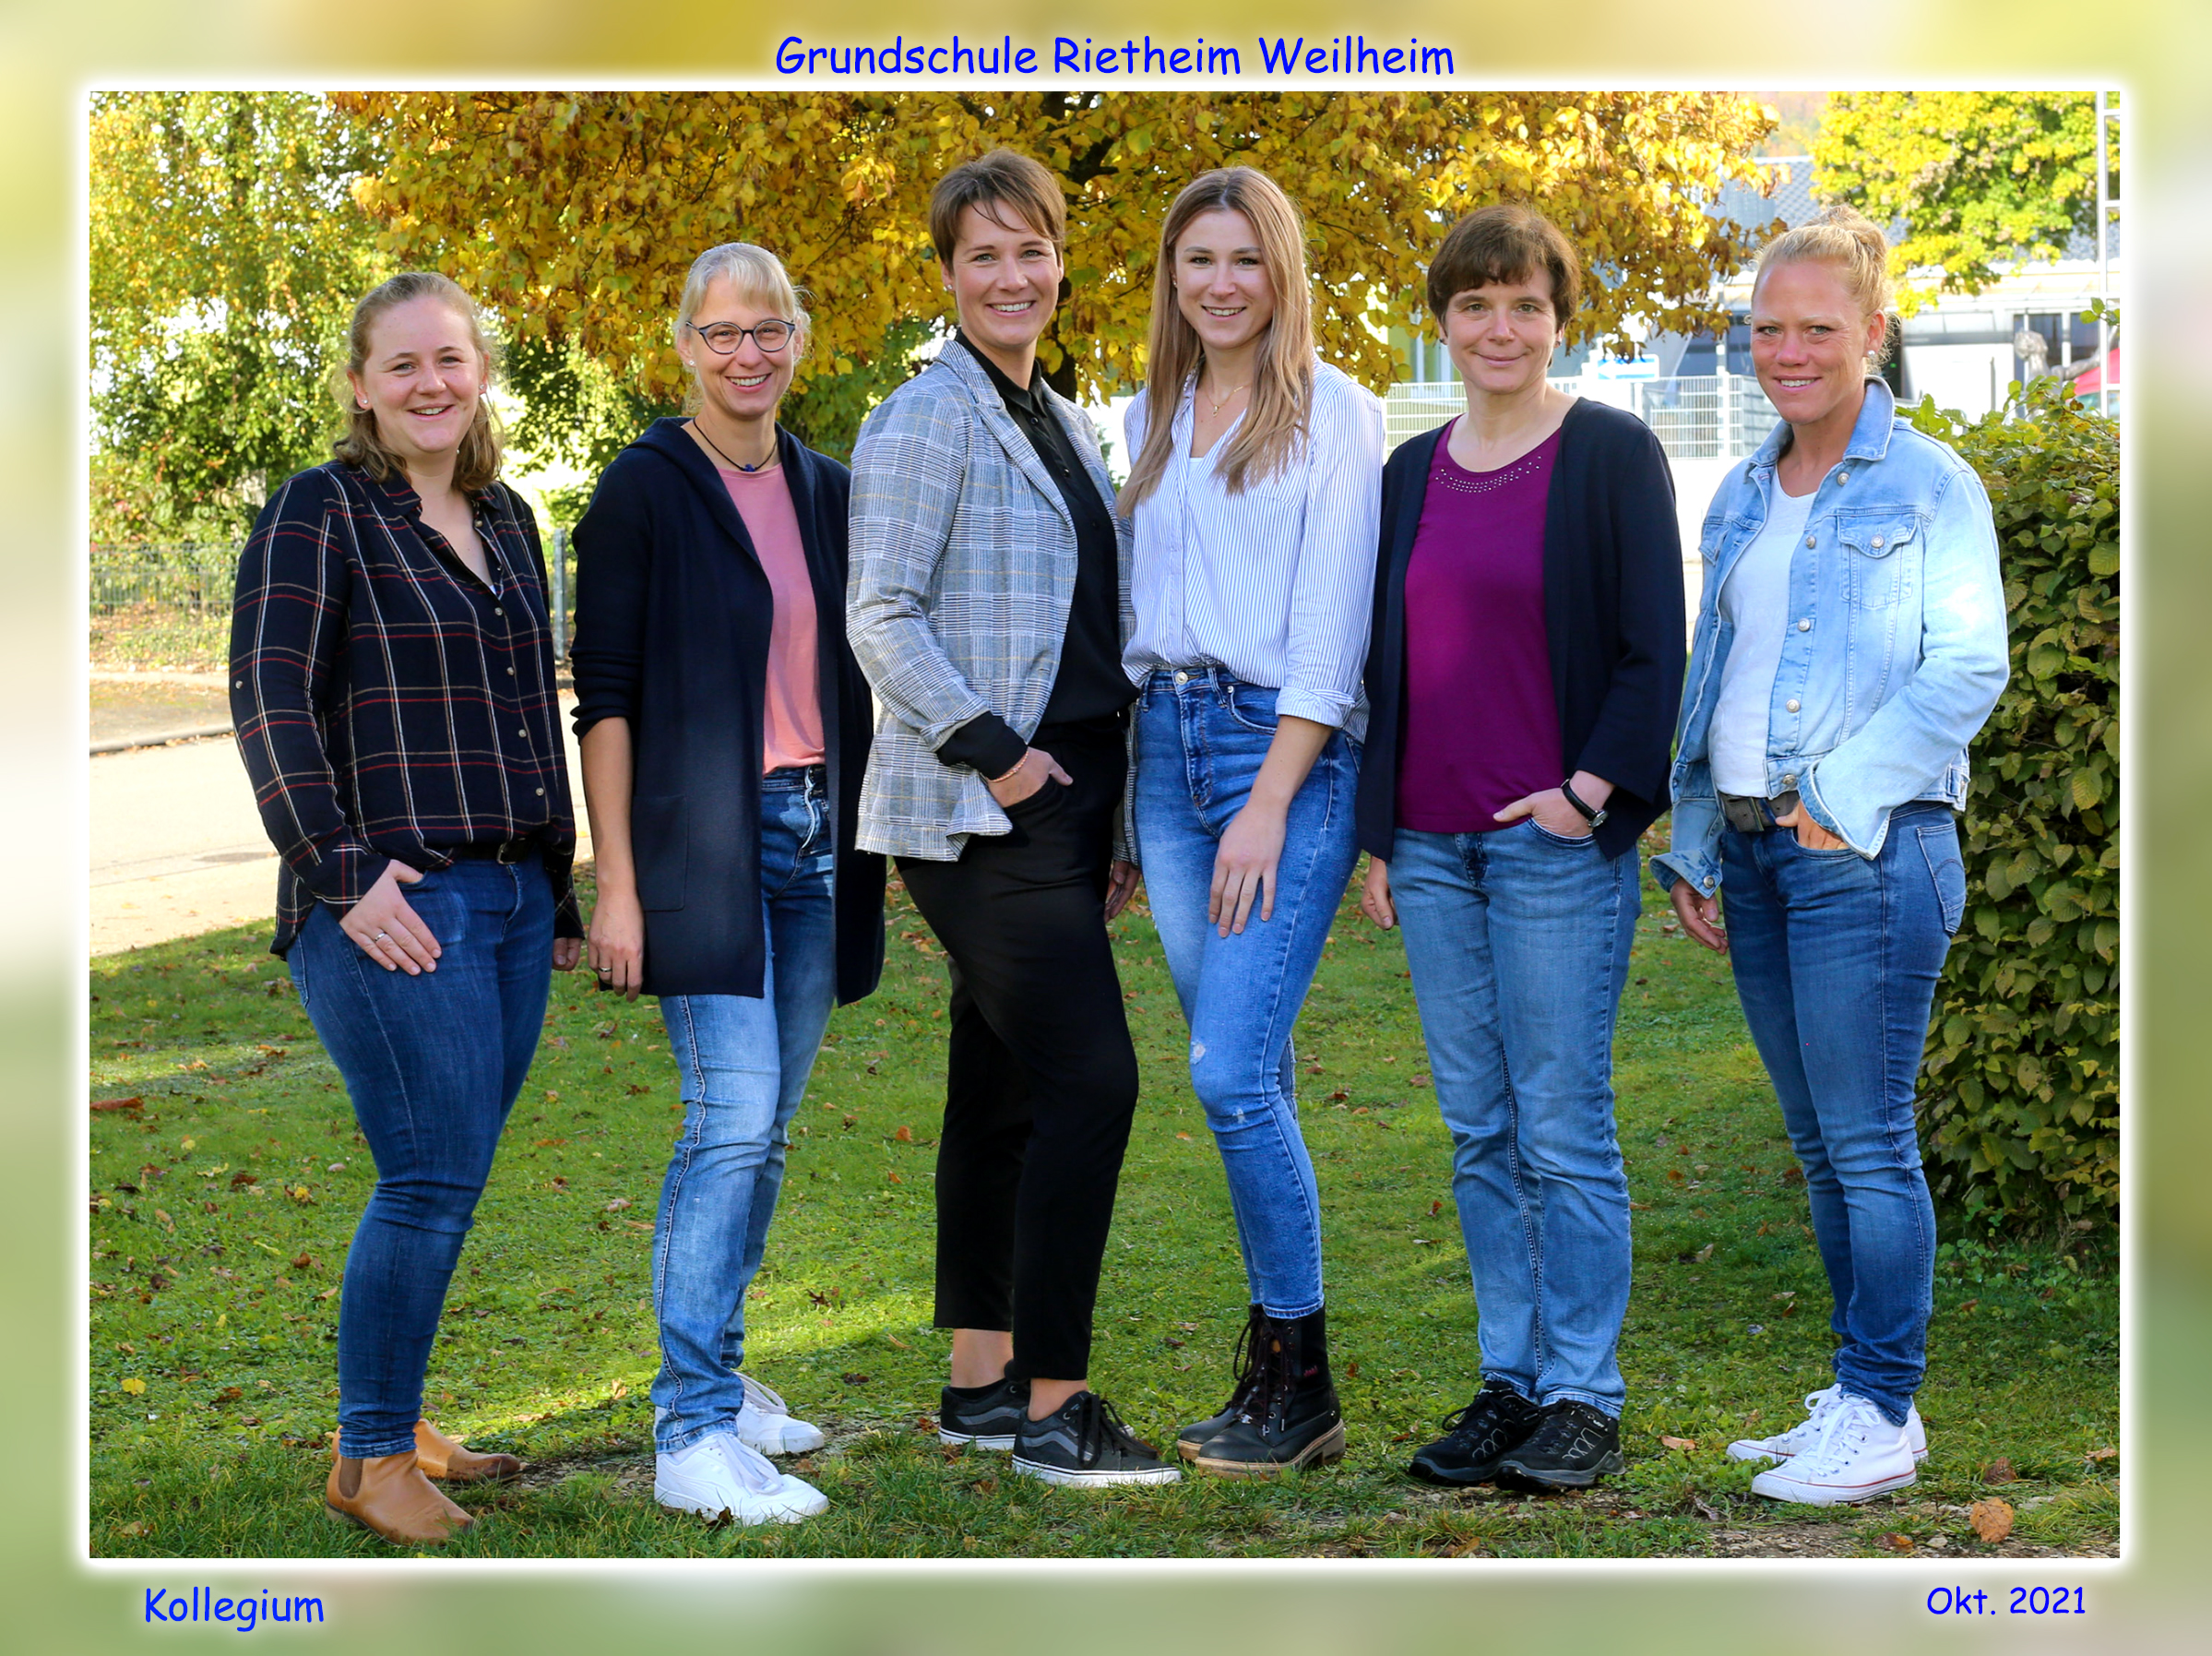 Schulteam 2021: Beschreibung Gruppenbild Grundschule Frau Bodmer, Frau Bacher, Frau Budzinski, Frau Metzger, Frau Woll, Frau Kleitsch